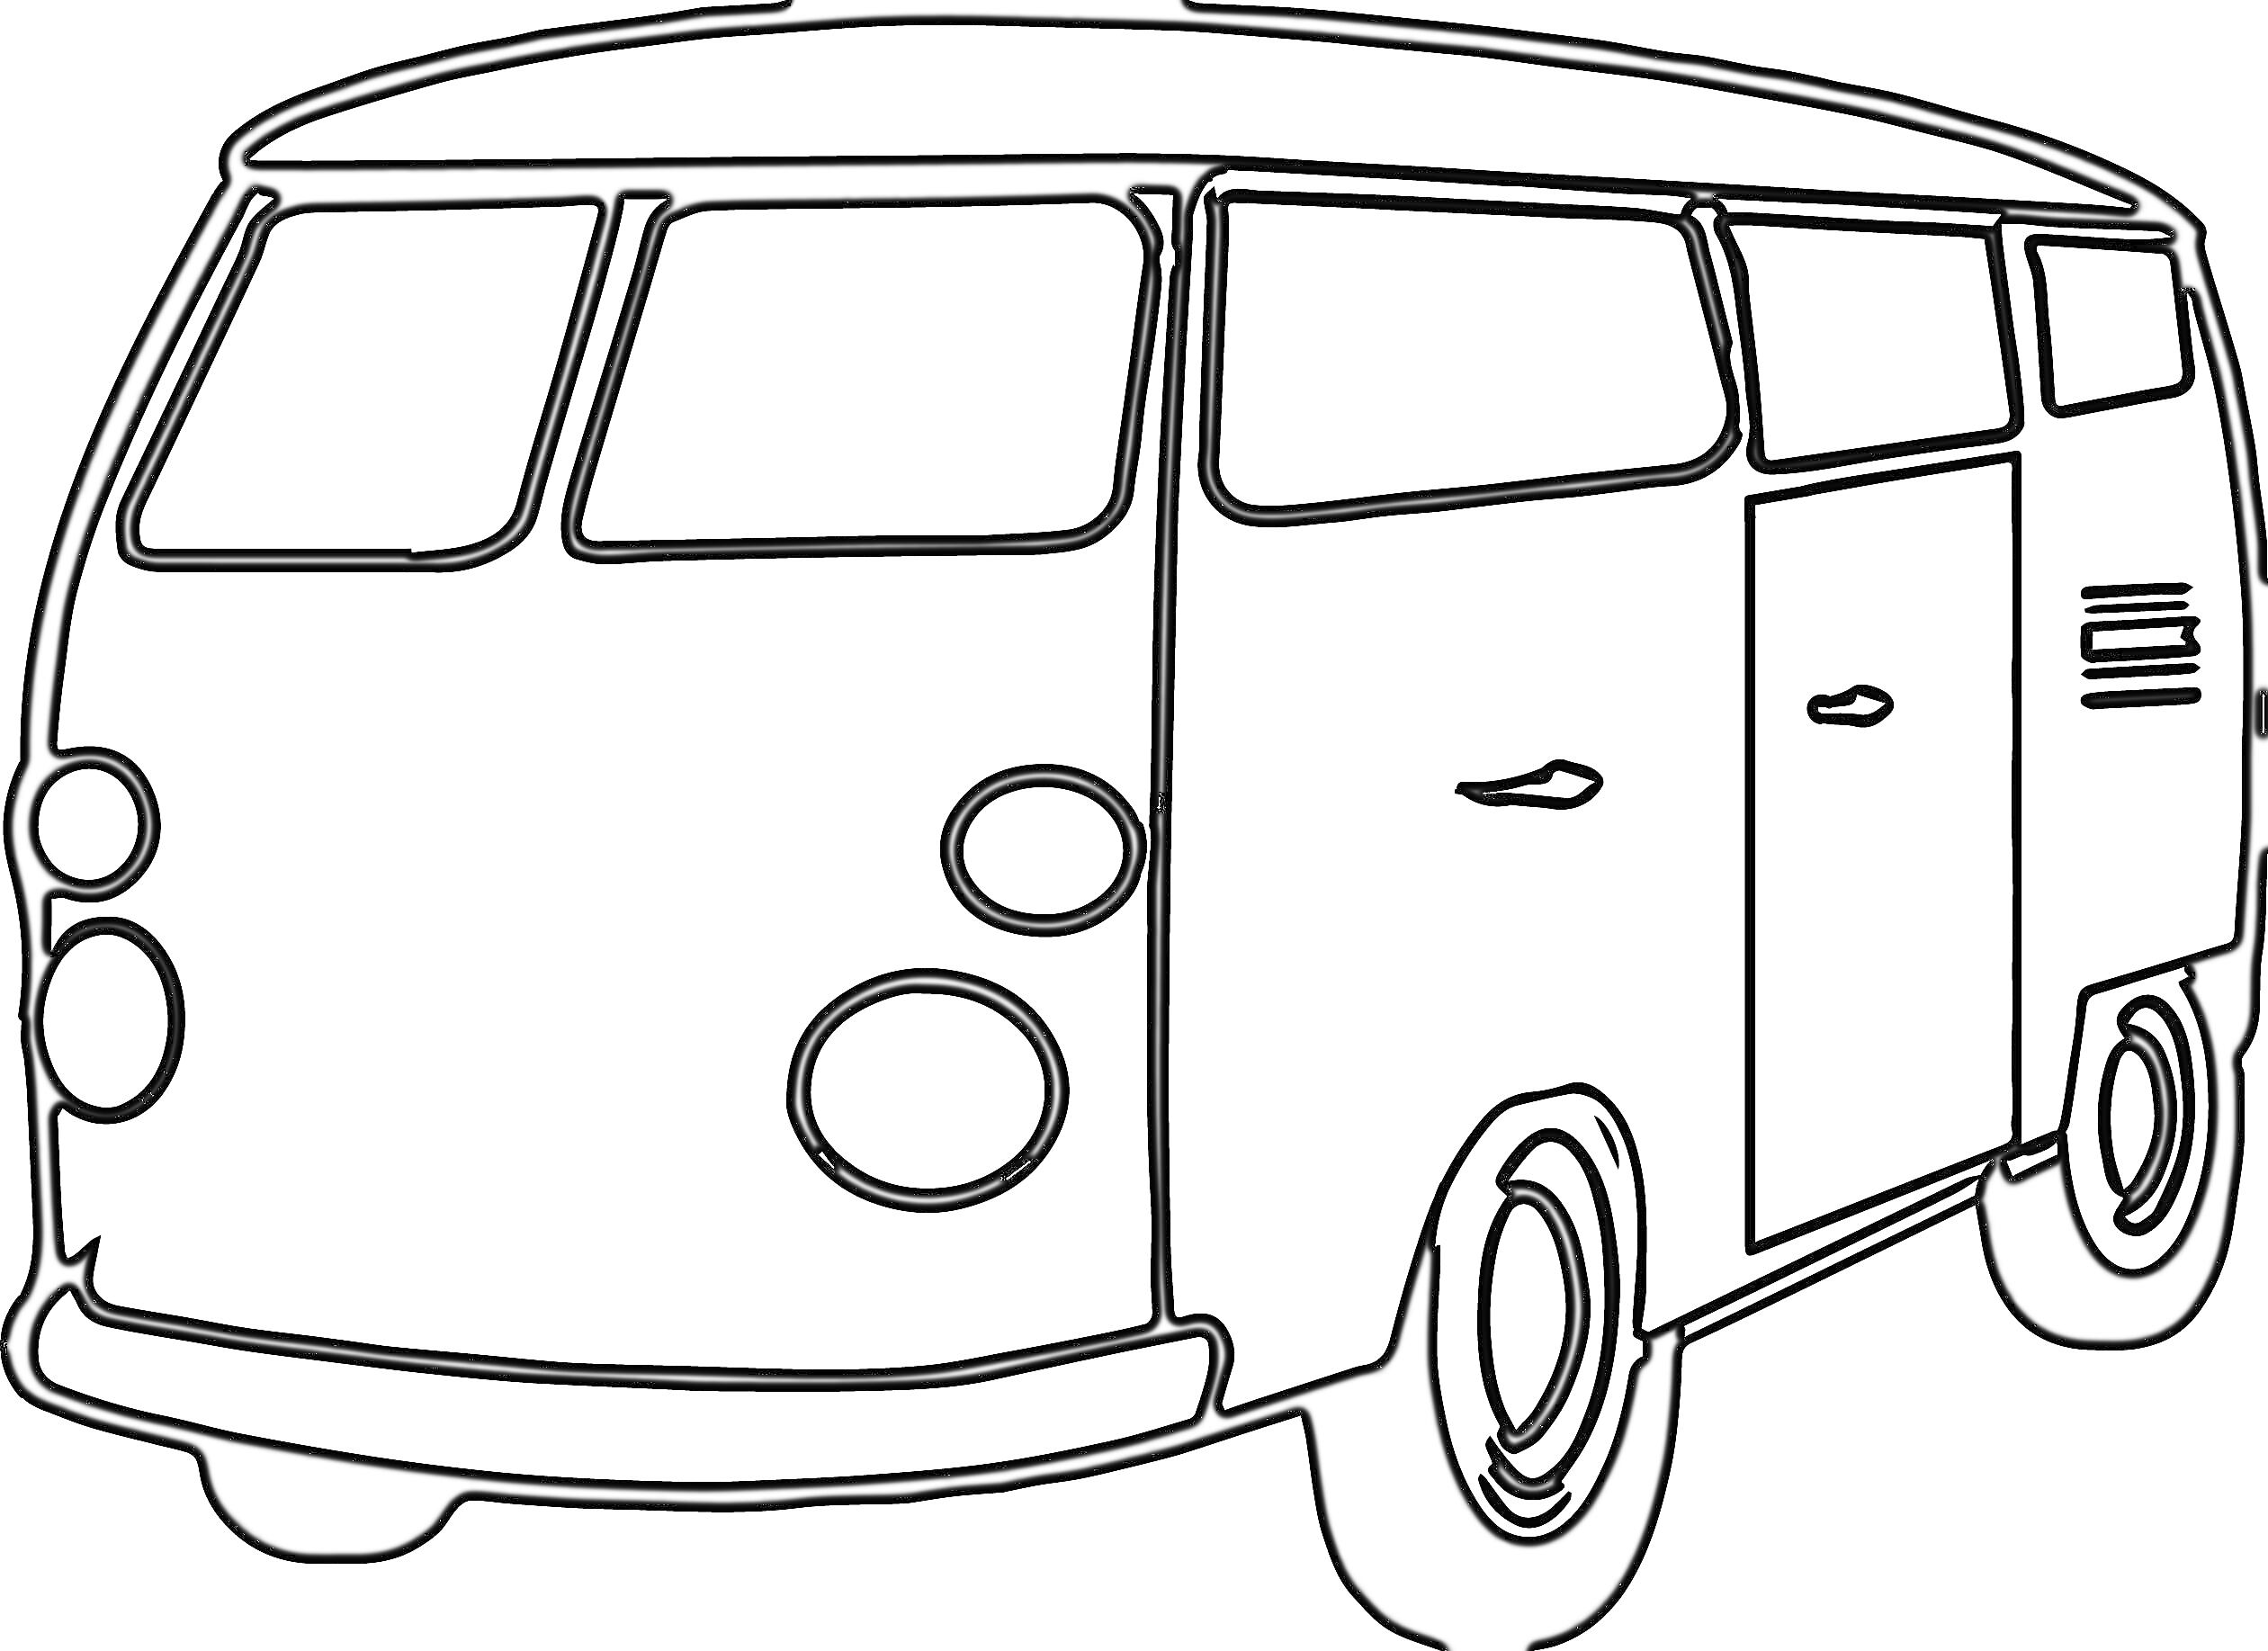 Раскраска Изображение фургона с передними круглыми фарами, боковой дверью и боковым окошком